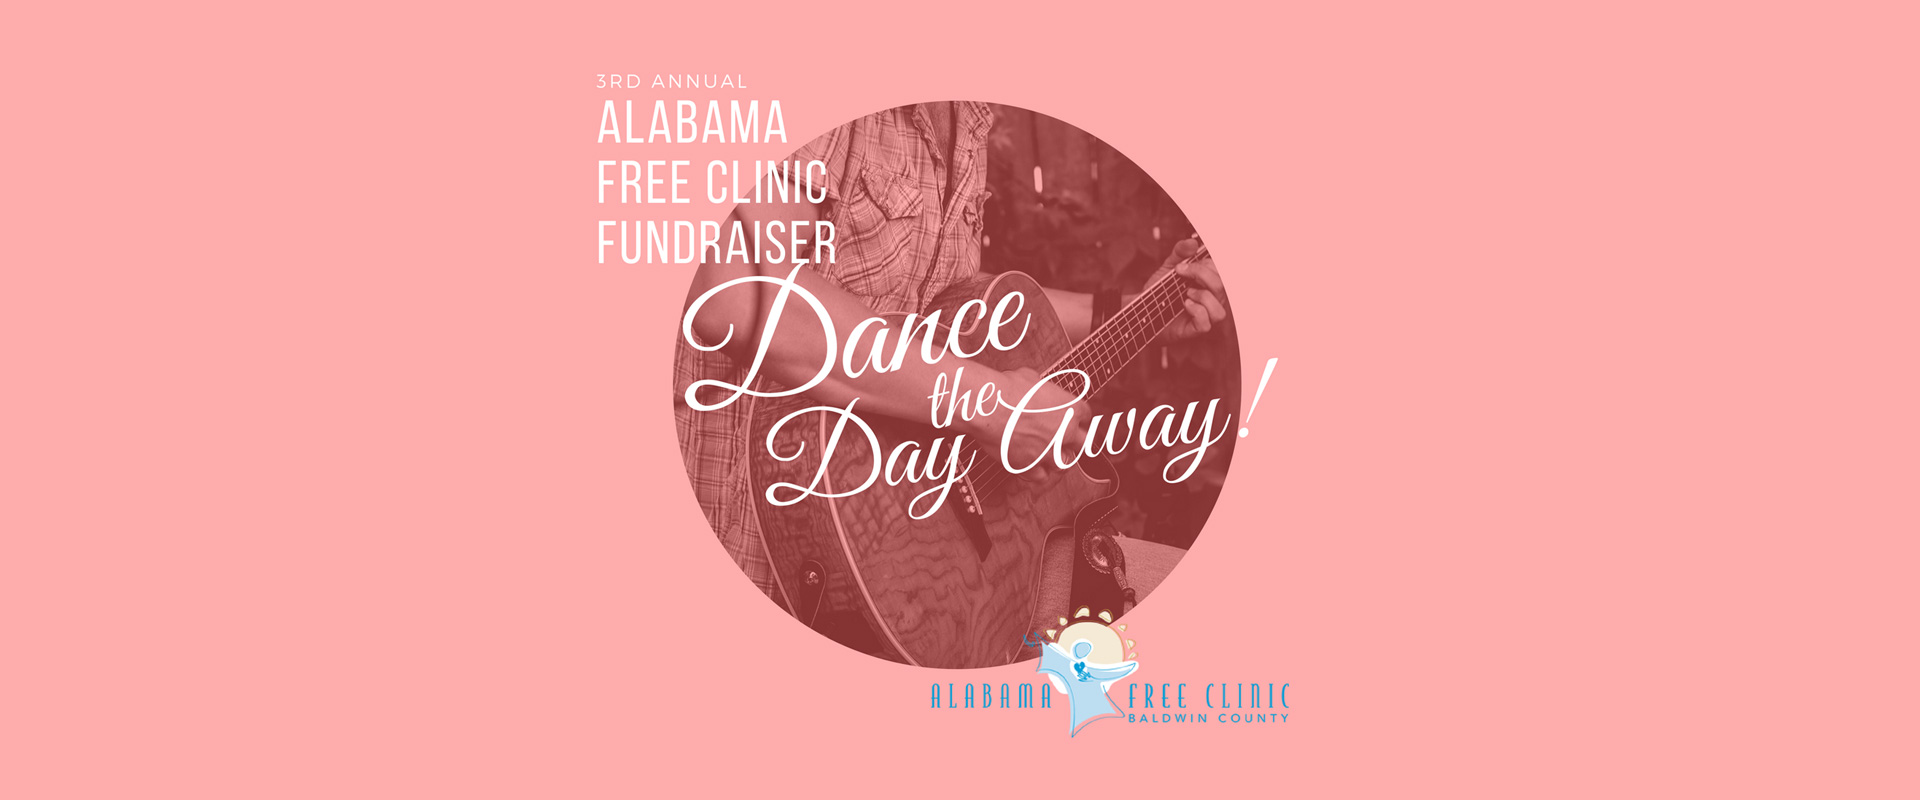 alabama free clinic dance day fundraiser fairhope alabama